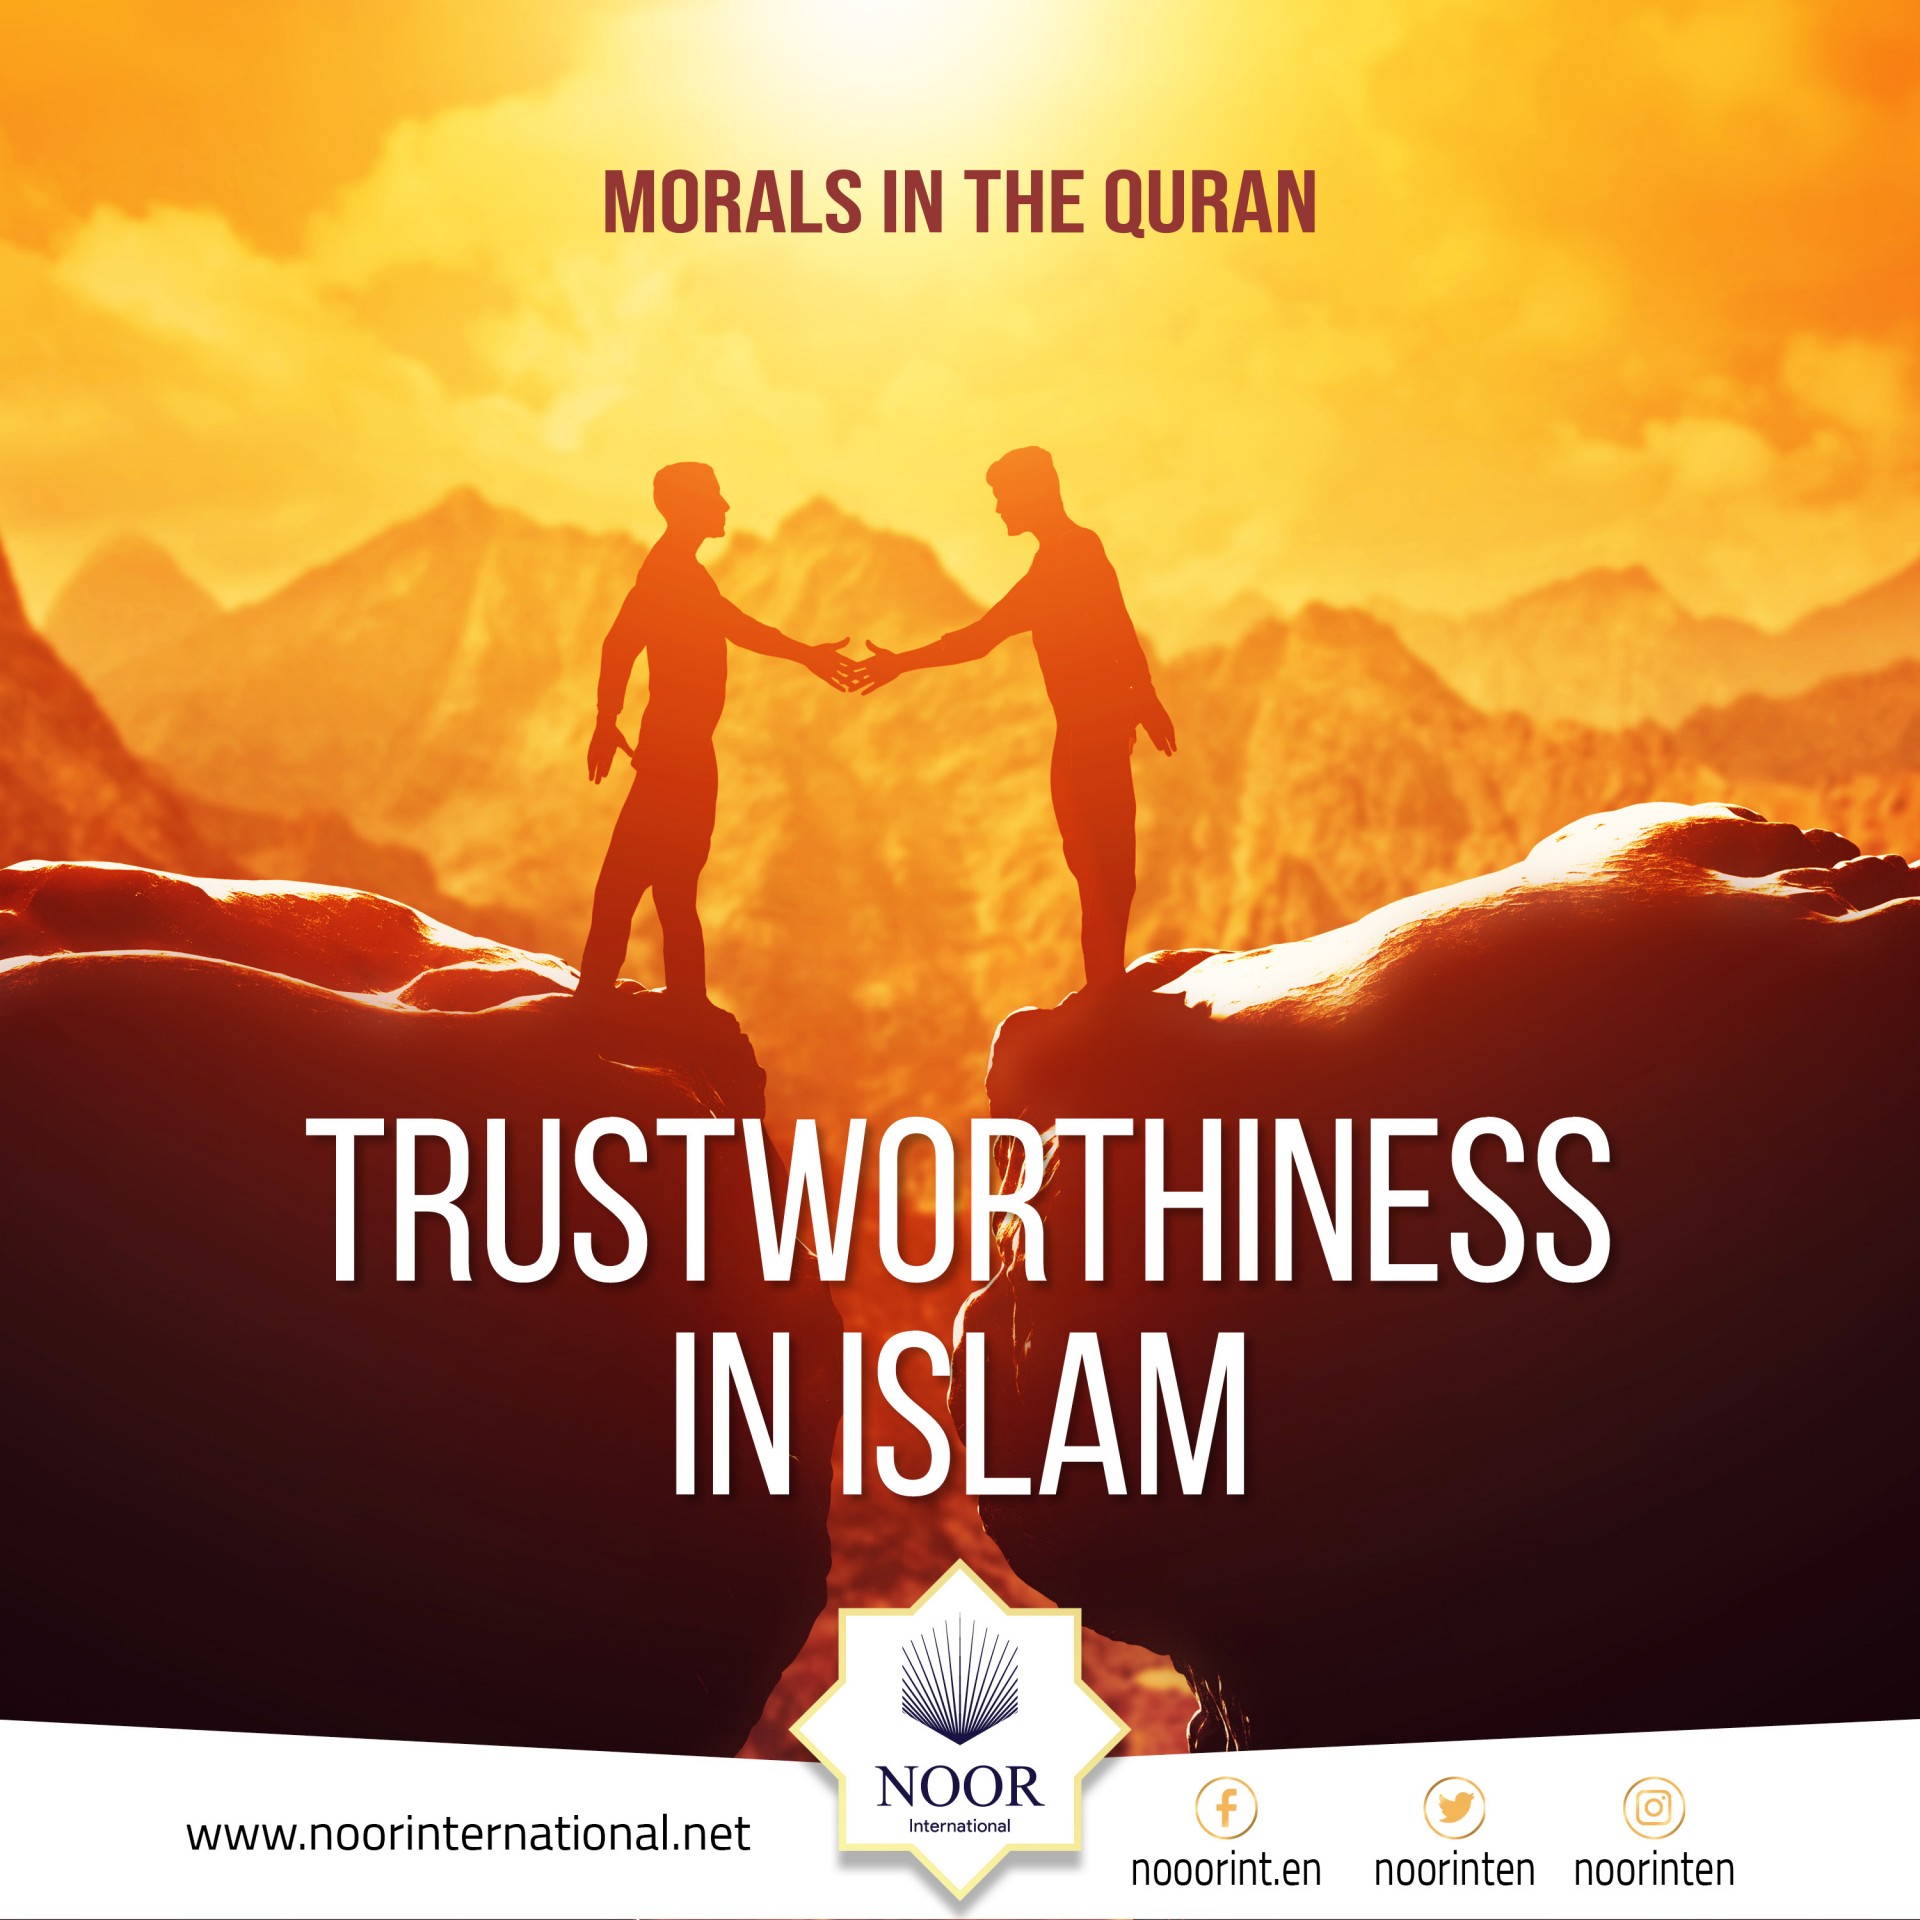 Trustworthiness in Islam